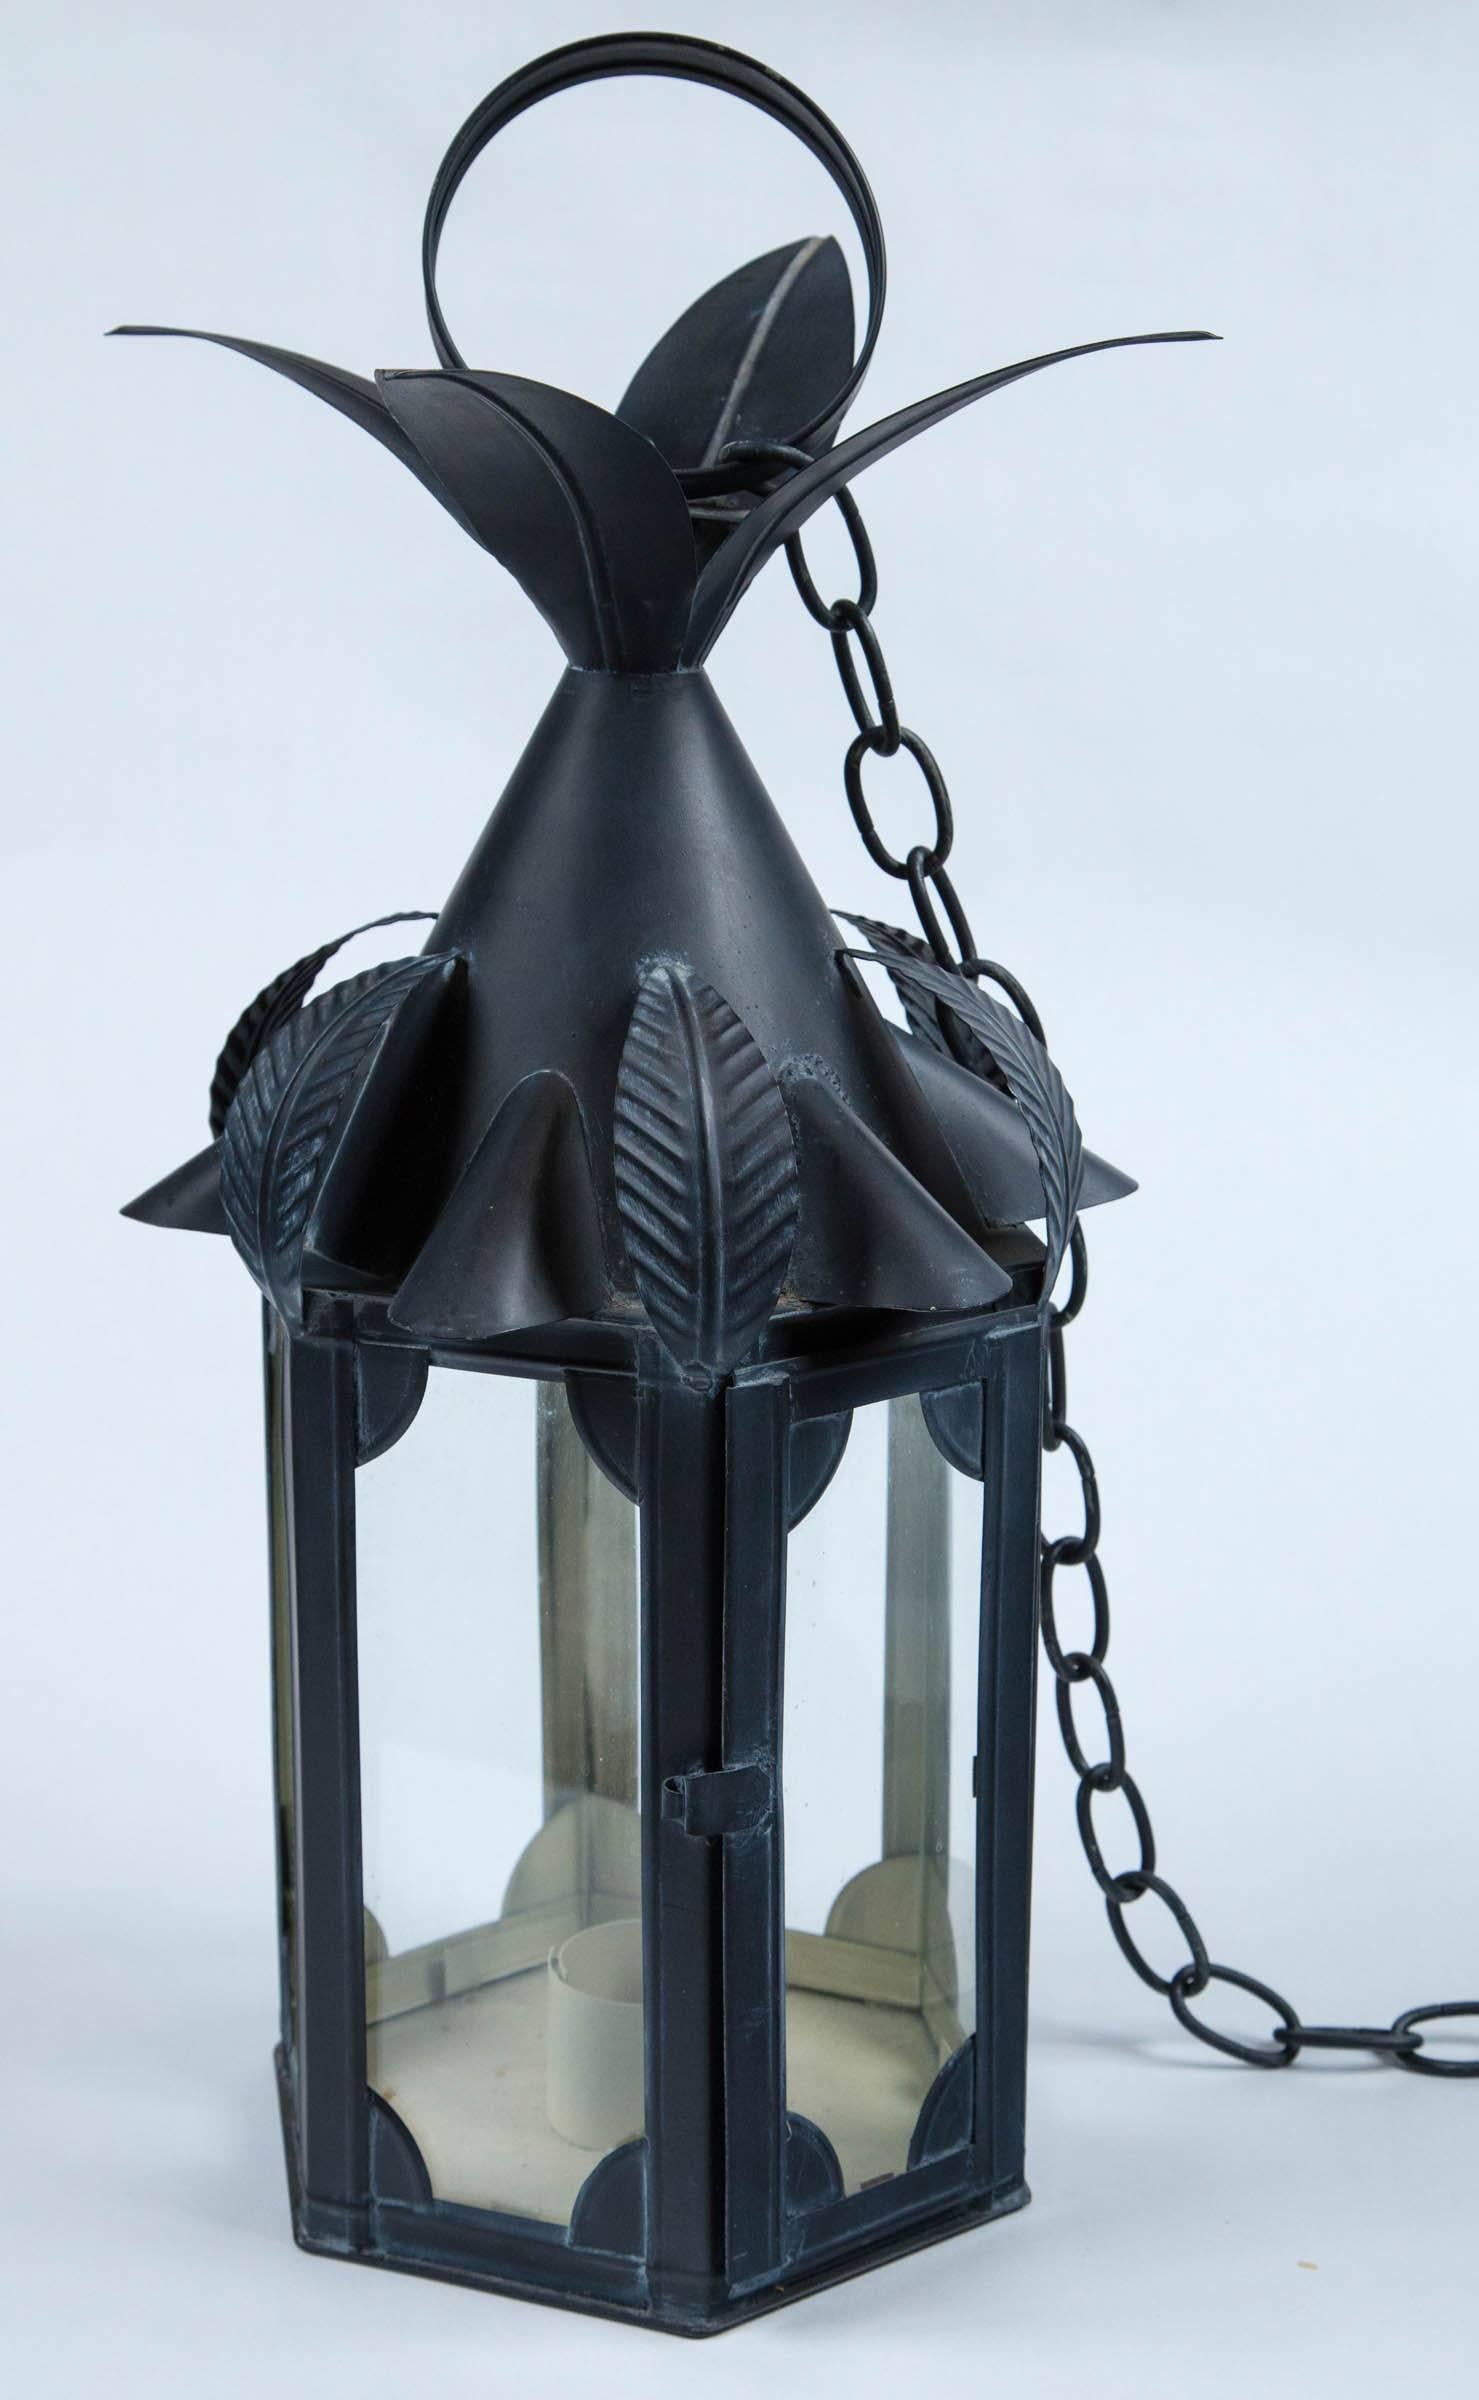 Old new stock petite lanterne en métal noir avec de grandes feuilles. Trois lanternes sont disponibles. Pas de câblage.